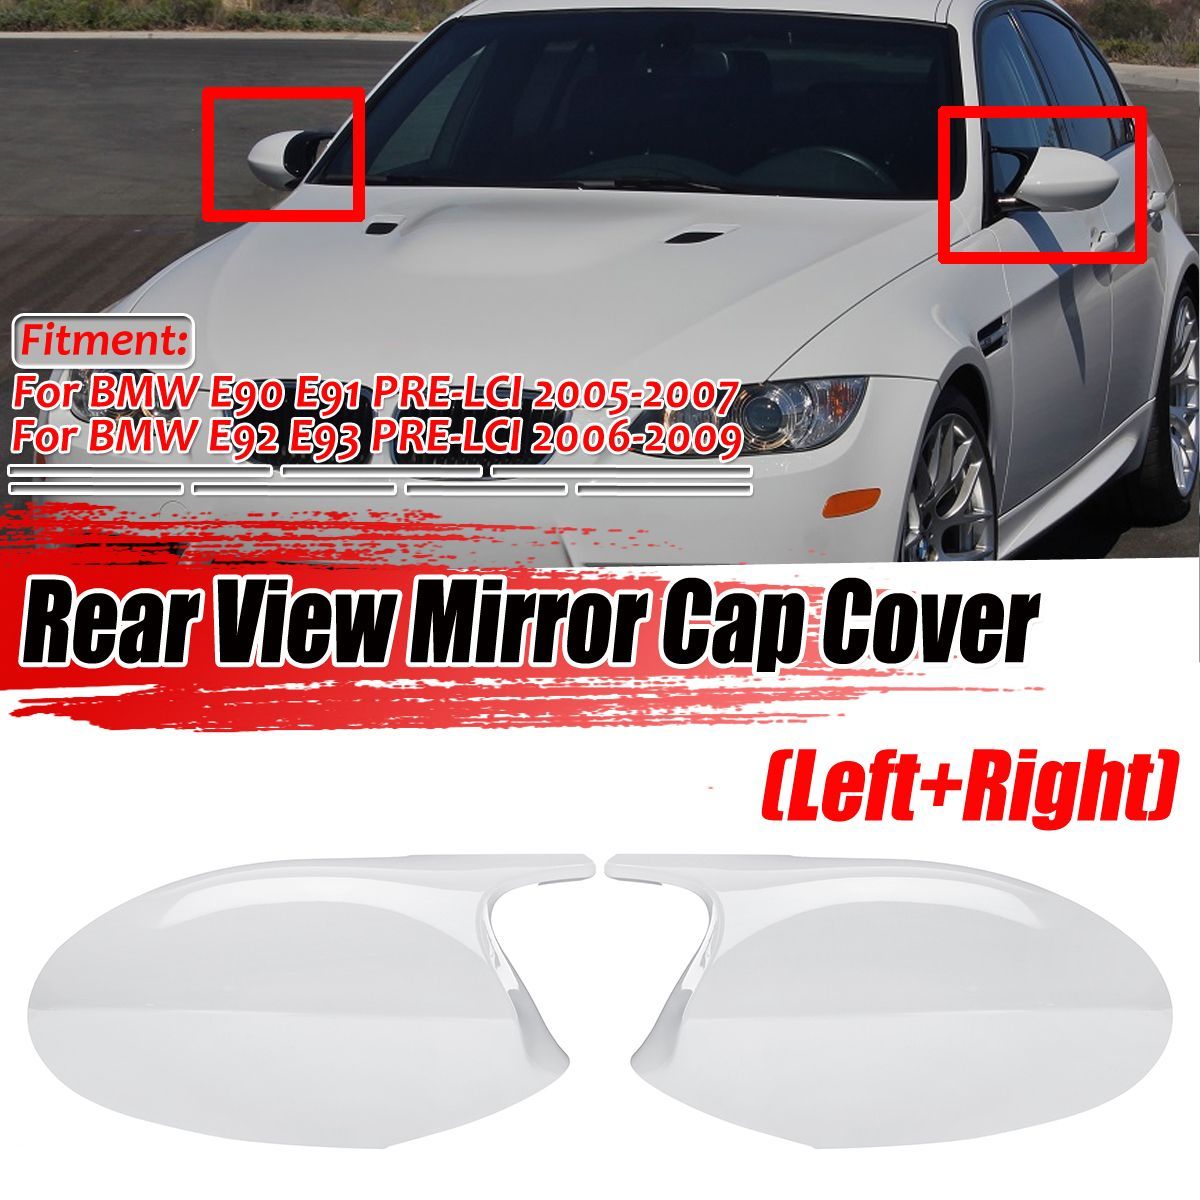 M3-Style-White-Rear-View-Mirror-Cap-Cover-Replacement-For-BMW-E90-E91-2005-2007-E92-E93-2006-2009-1689154